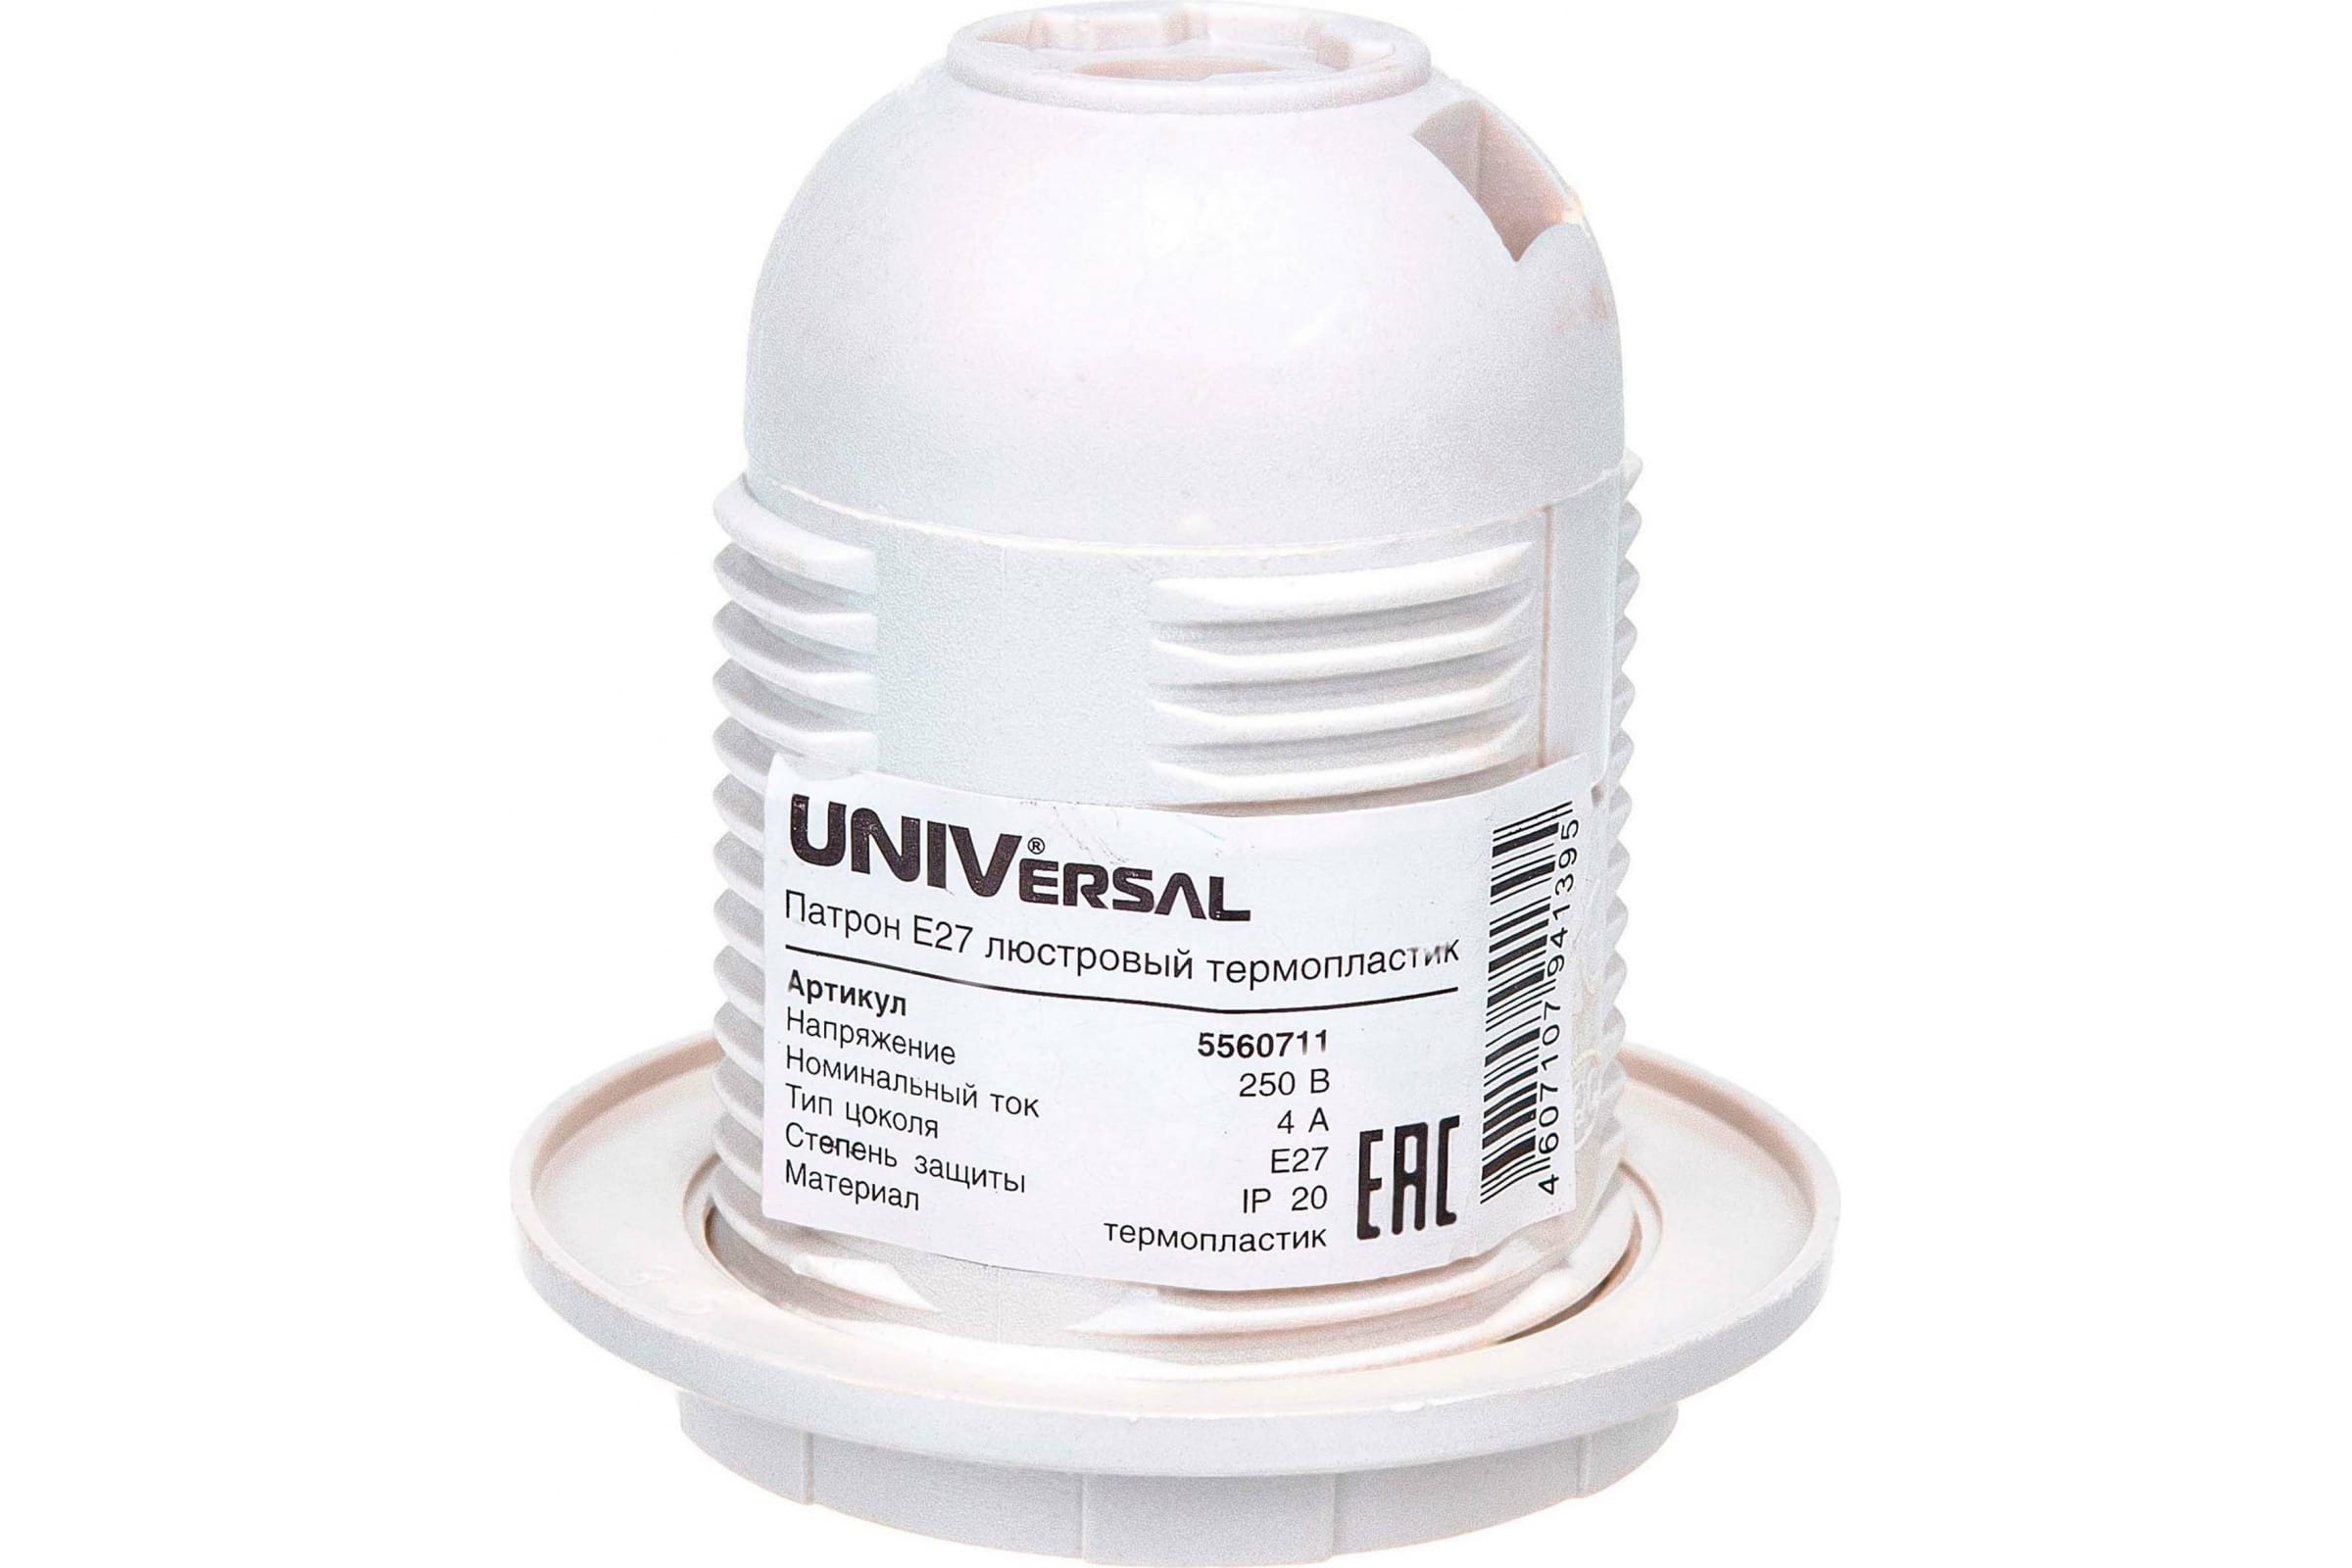 UNIVersal Патрон Е27 люстровый термопластик 4А 250В c этикеткой 5560711